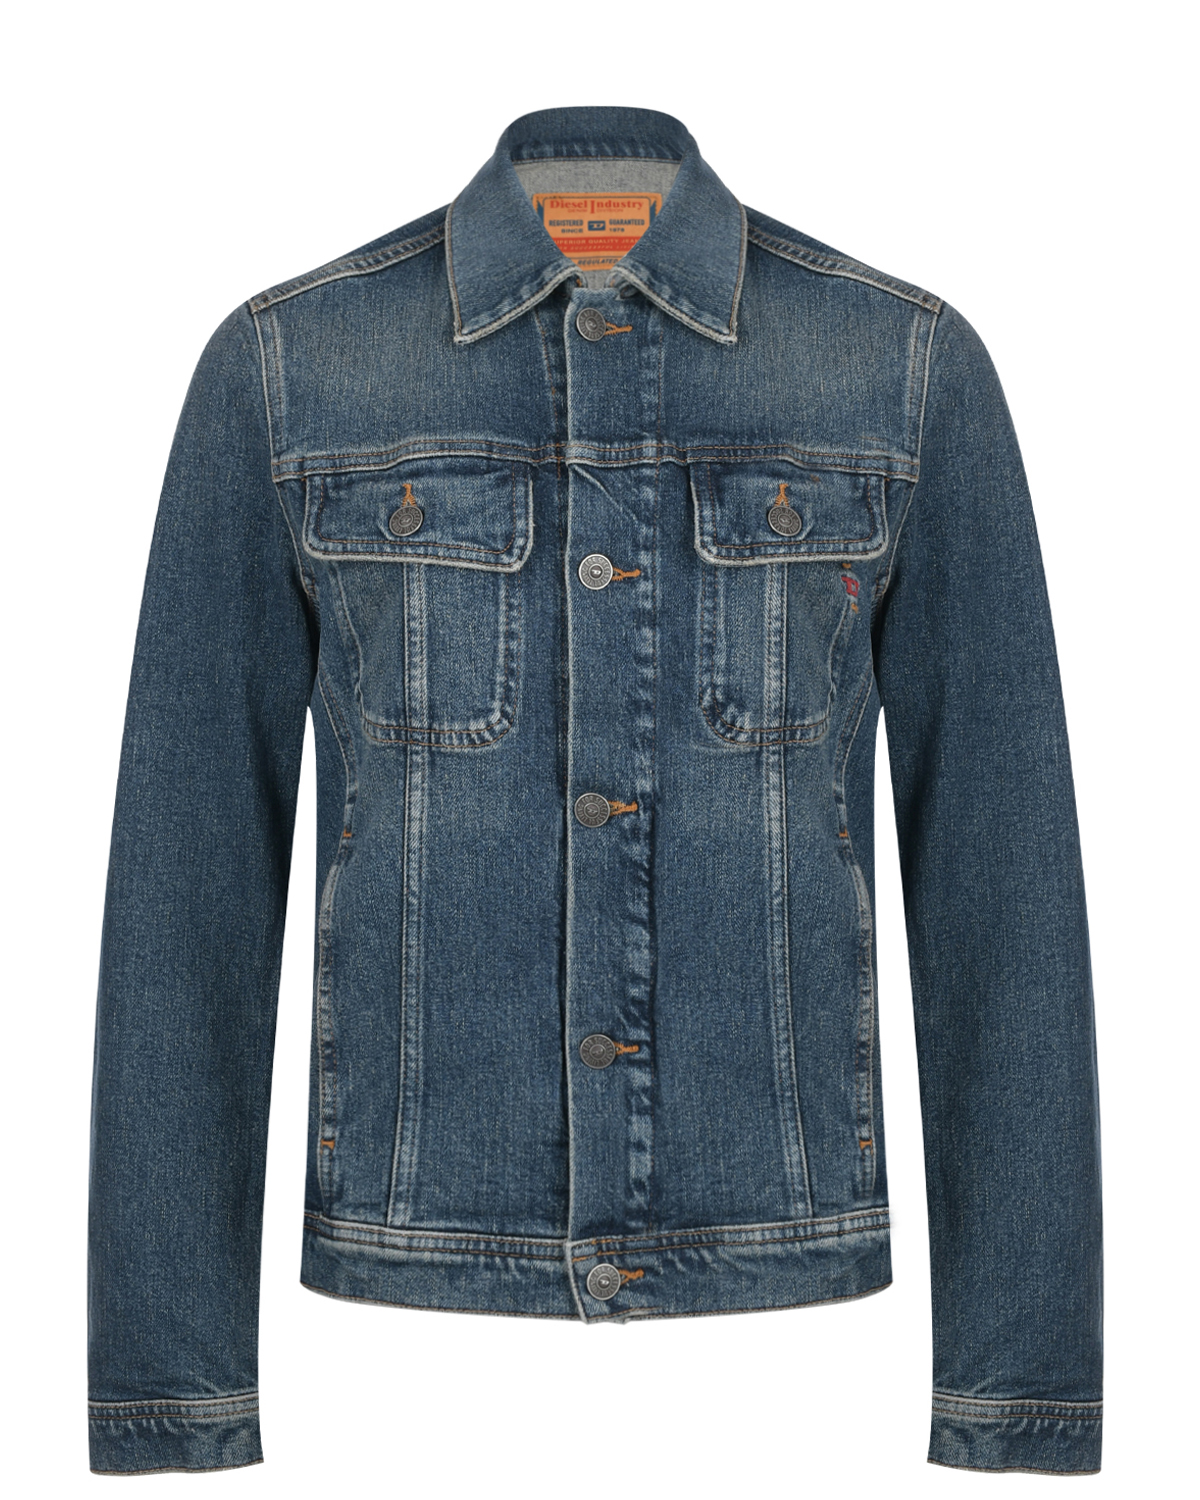 Классическая джинсовая куртка Diesel, размер 44, цвет синий